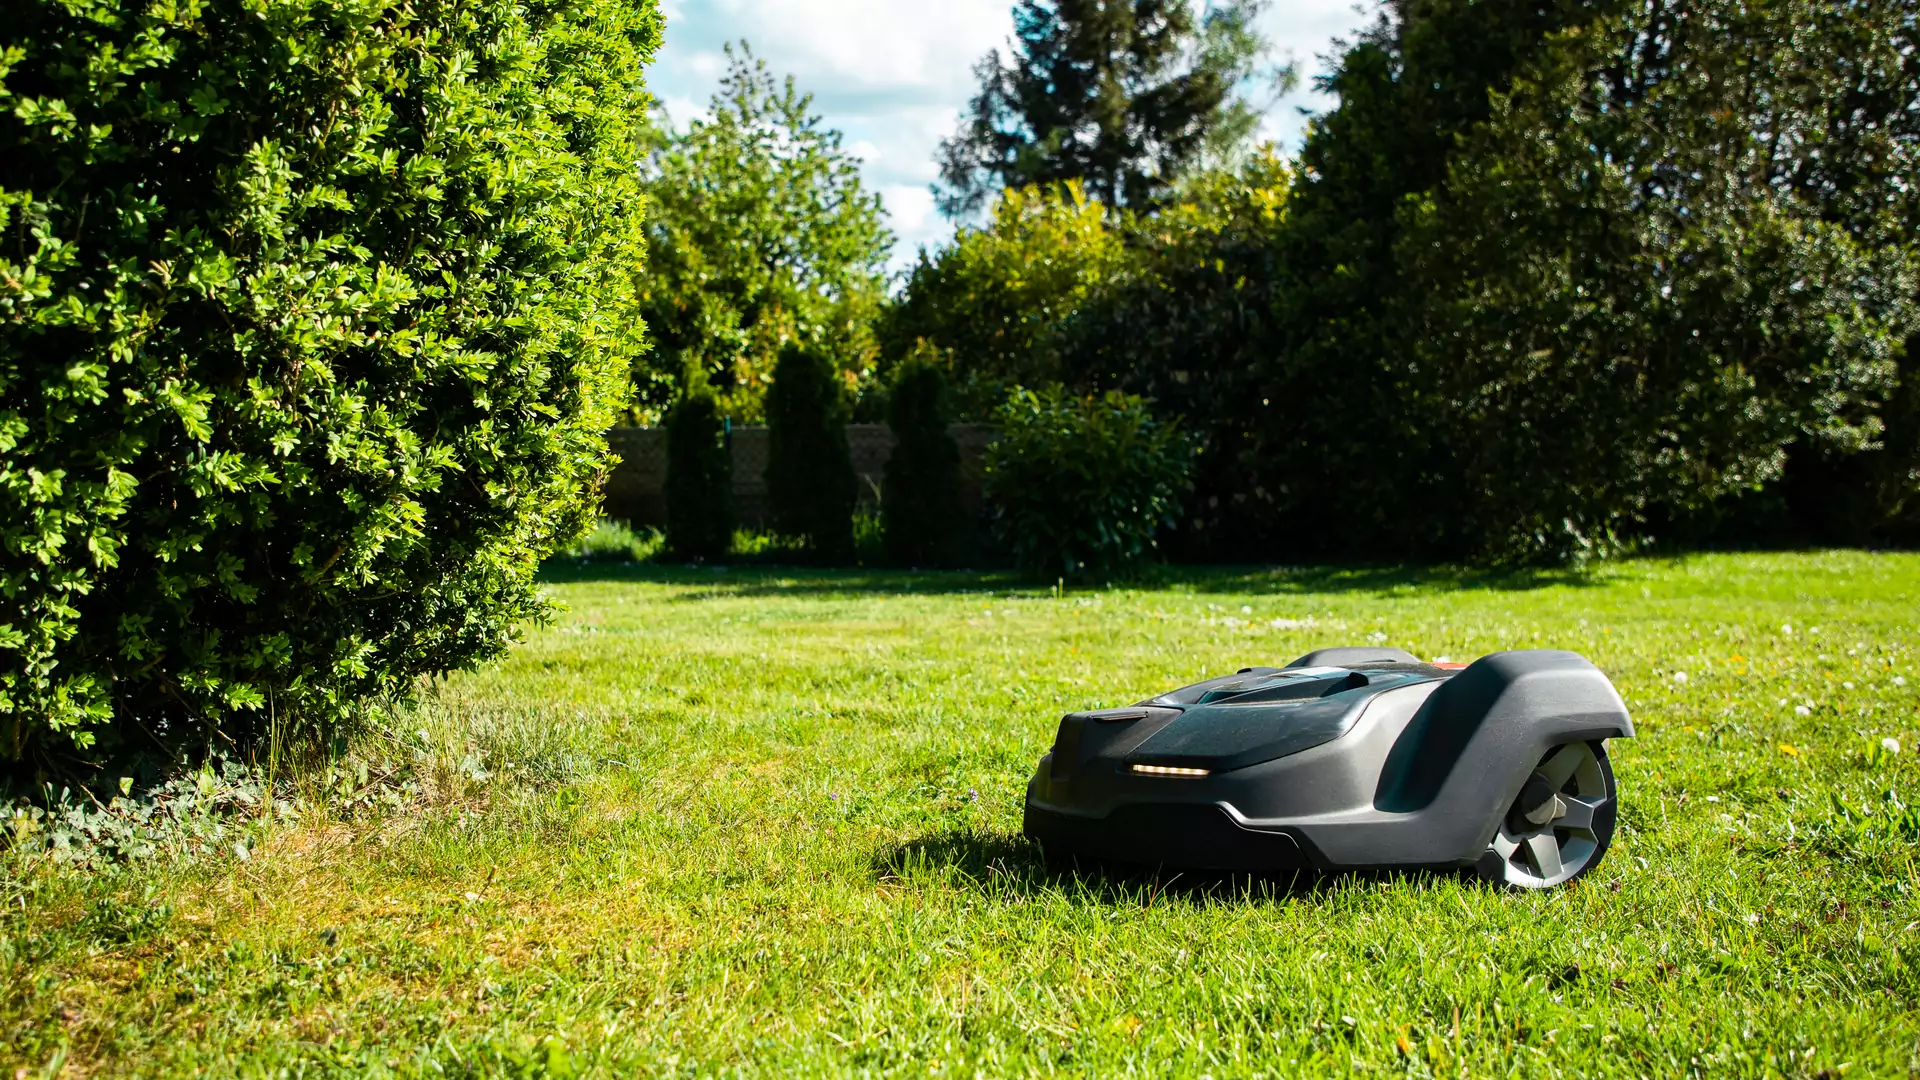 Automatyczna kosiarka — ten robot skosi trawę za ciebie